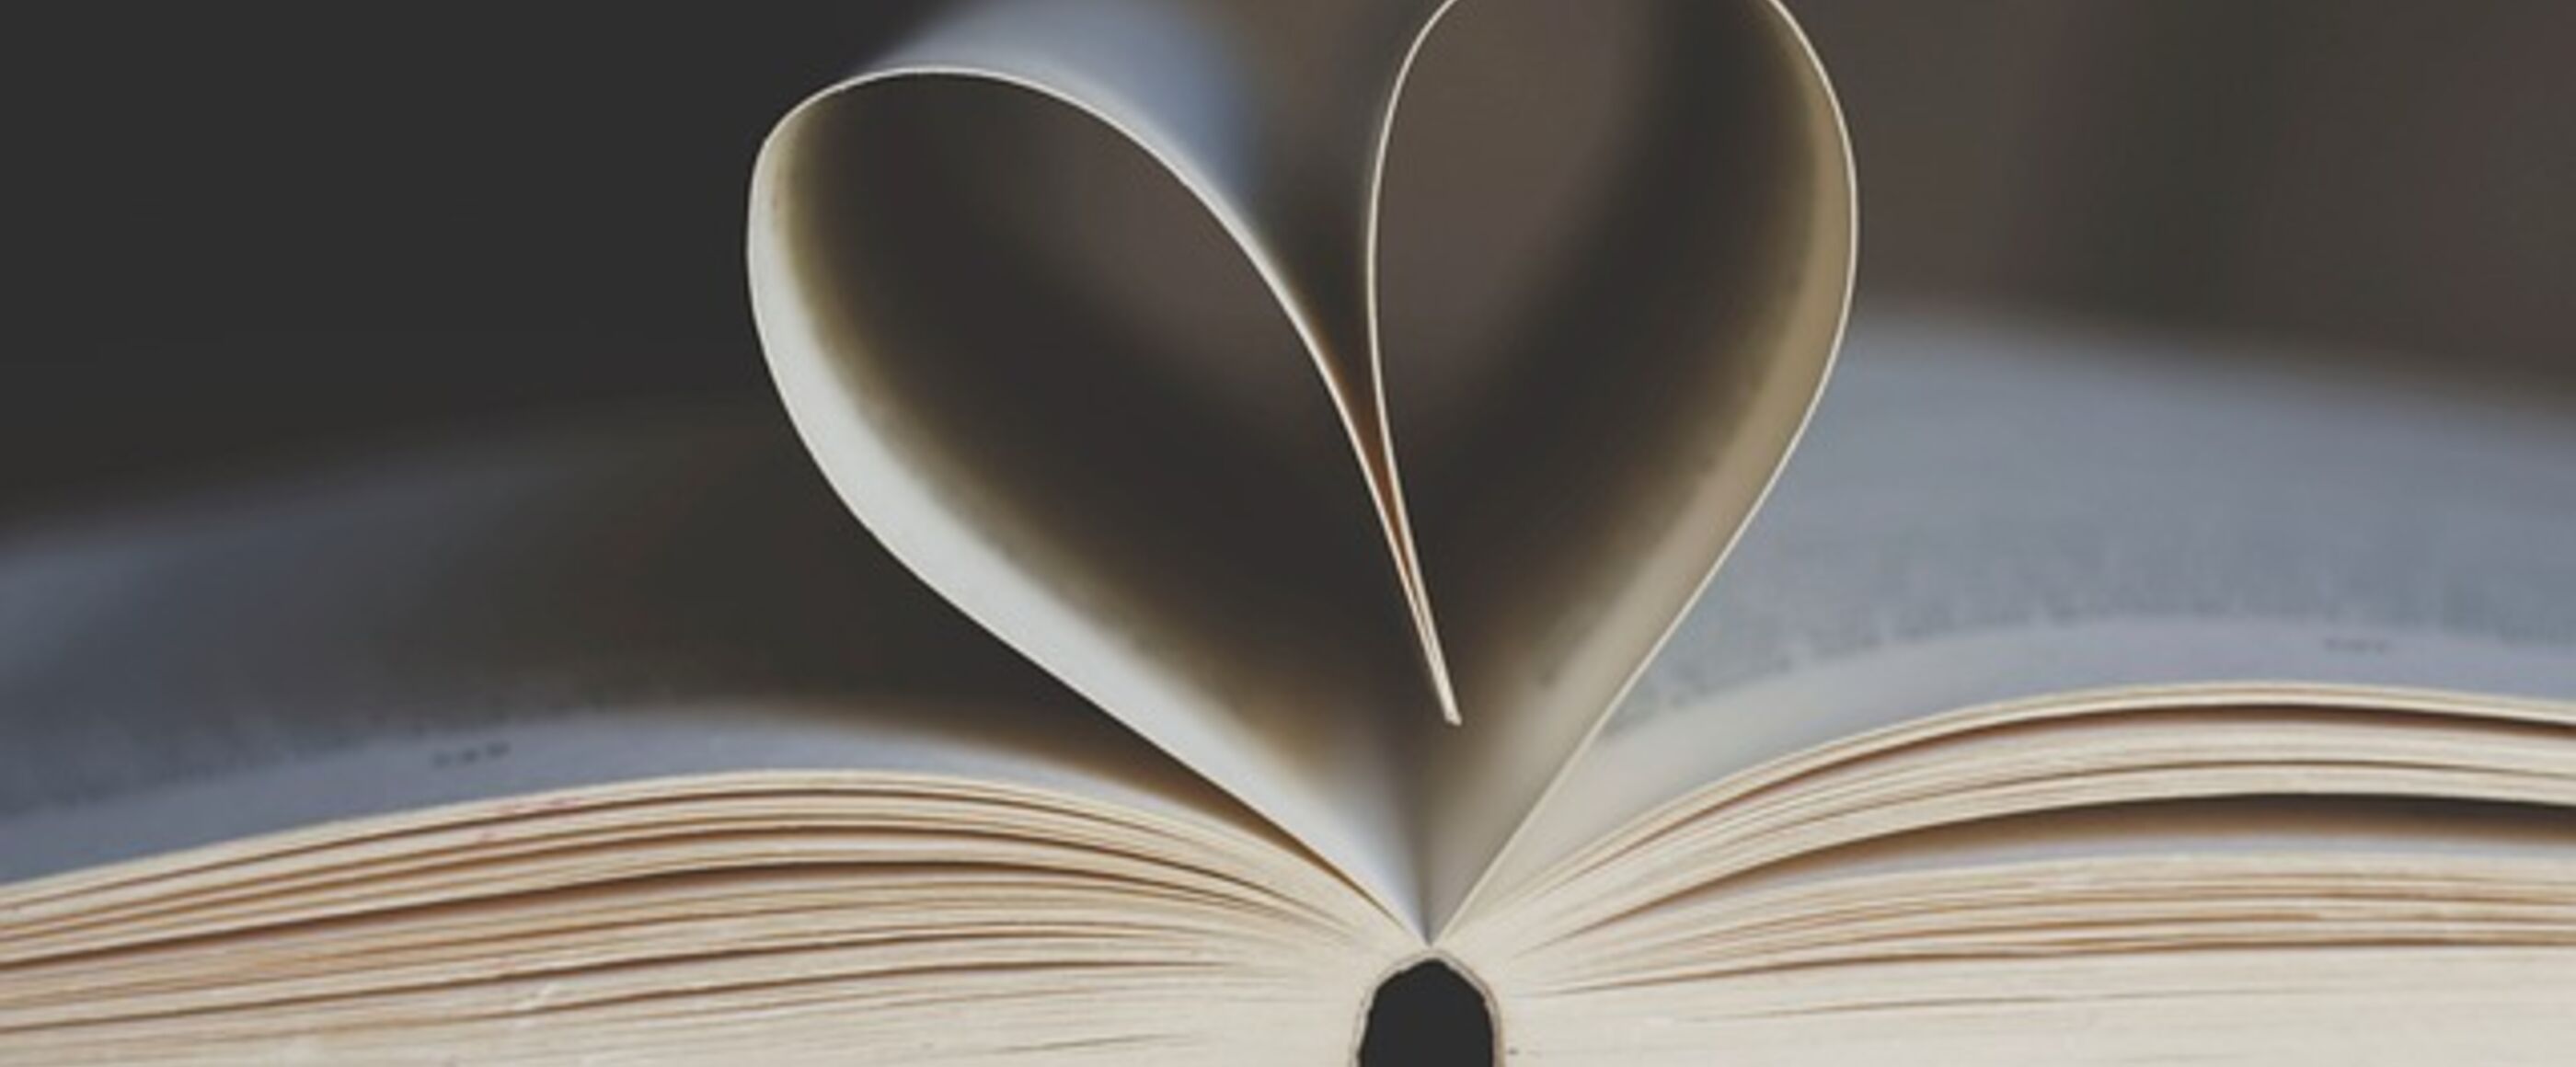 Ein aufgeschlagenes Buch. Zwei Seiten bilden eine Herzform